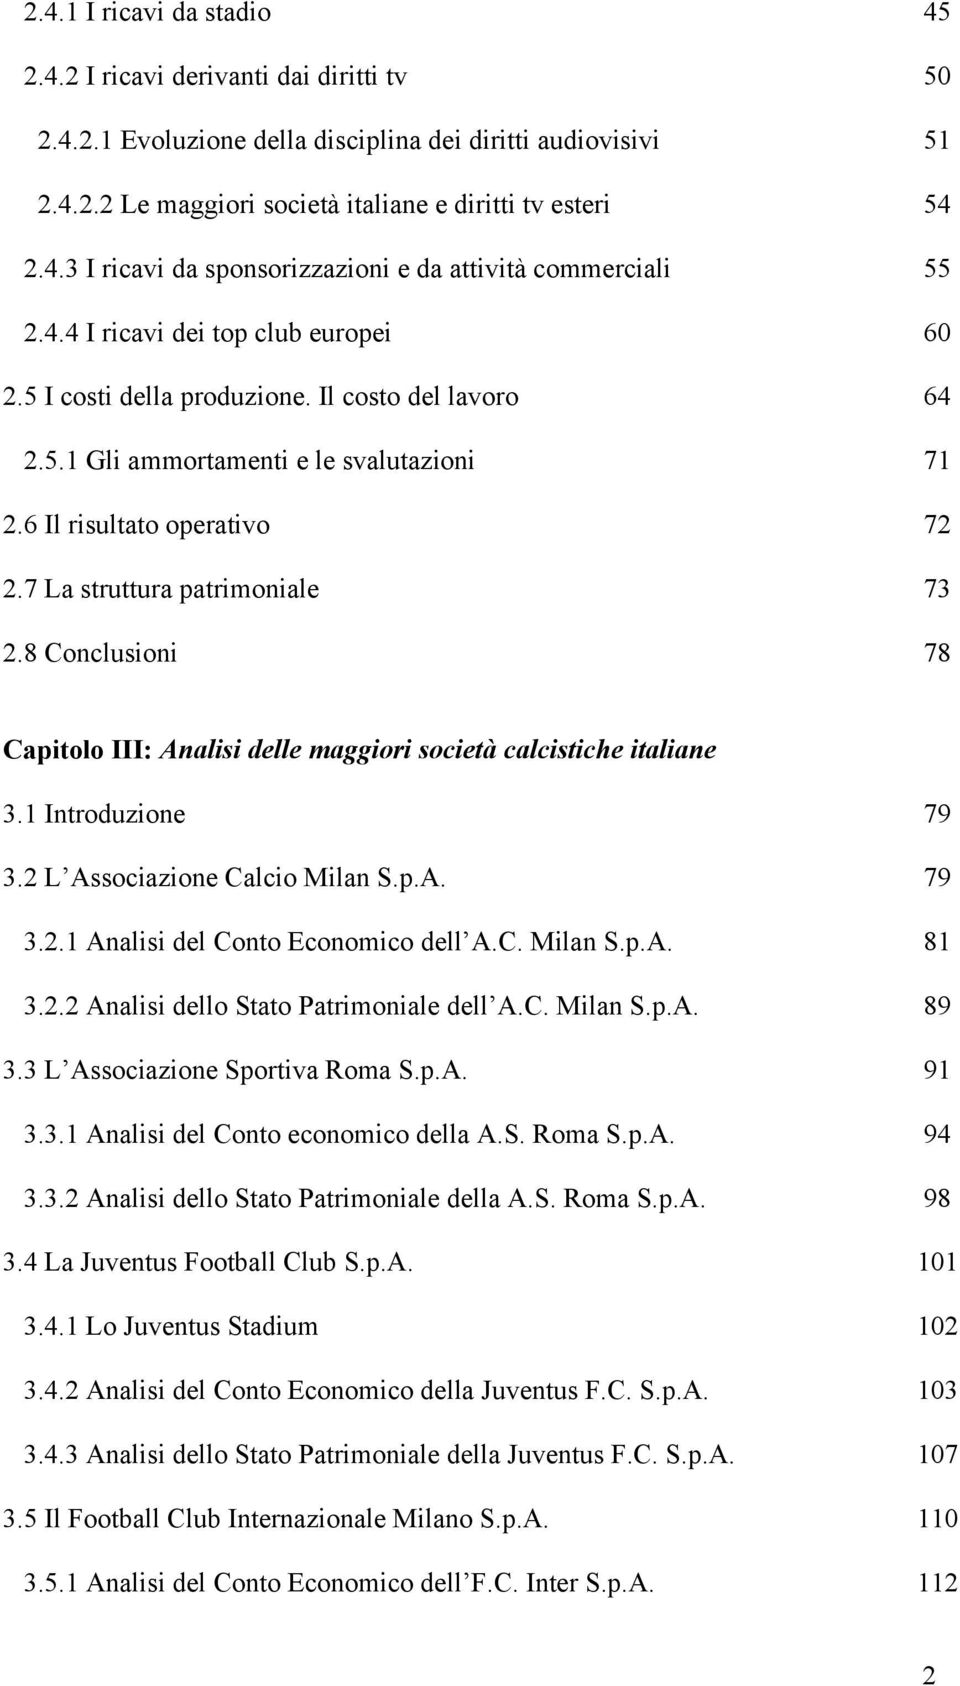 8 Conclusioni 78 Capitolo III: Analisi delle maggiori società calcistiche italiane 3.1 Introduzione 79 3.2 L Associazione Calcio Milan S.p.A. 79 3.2.1 Analisi del Conto Economico dell A.C. Milan S.p.A. 81 3.